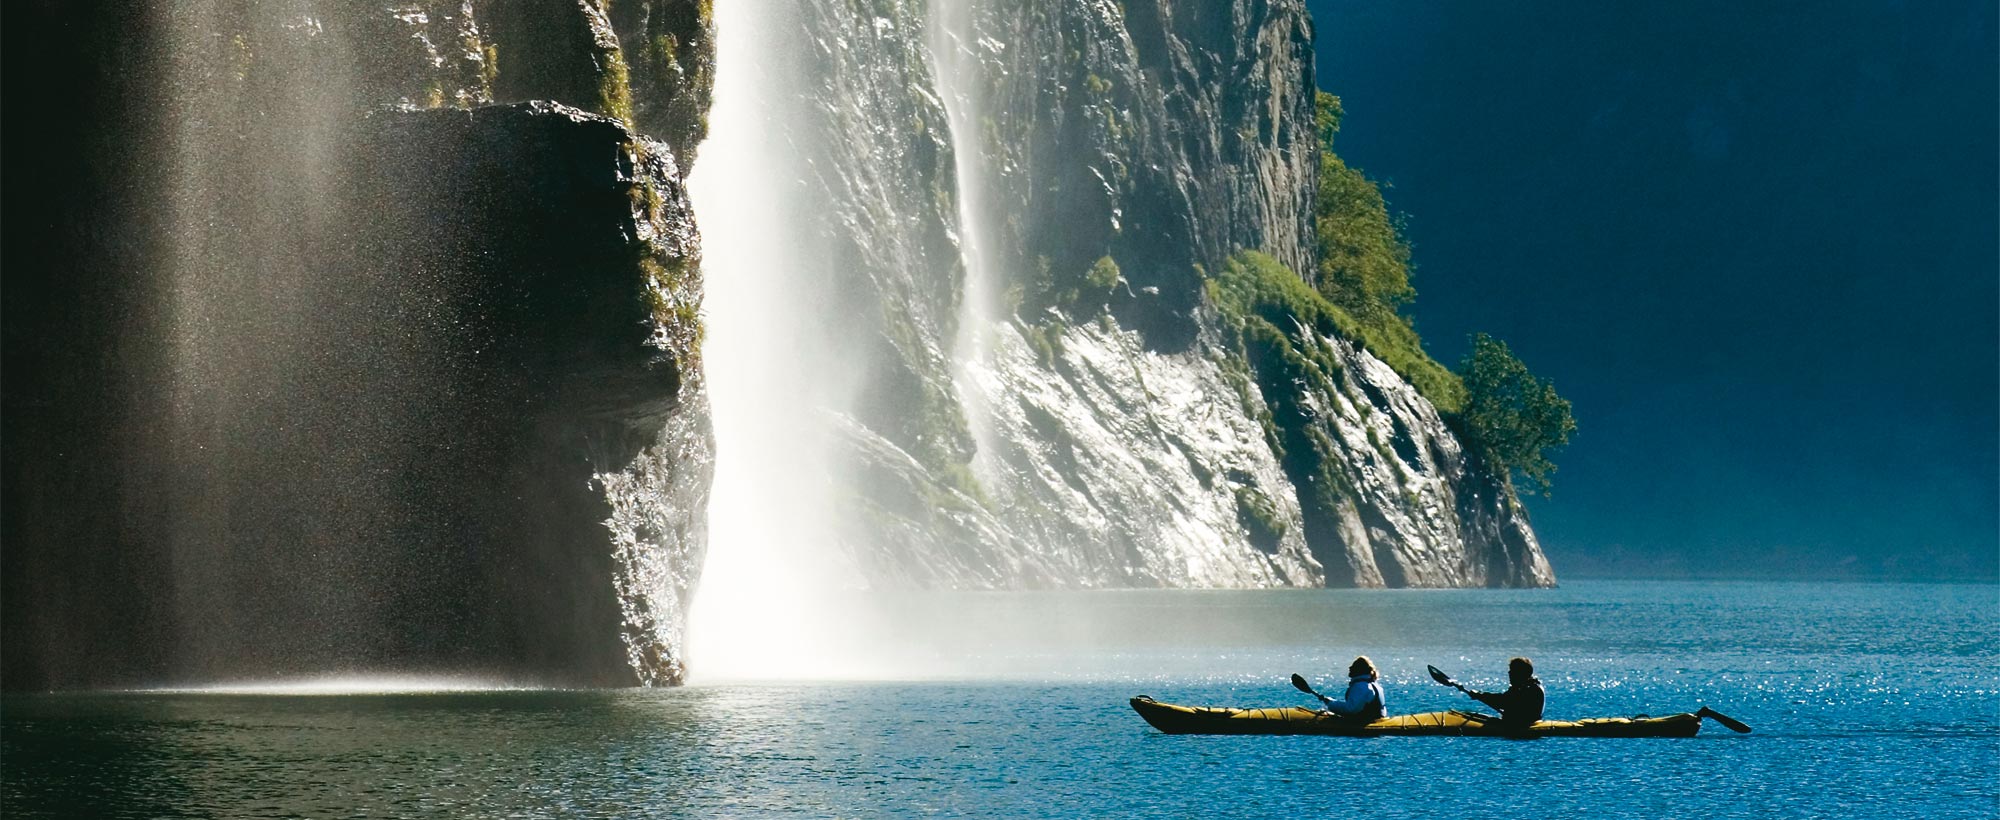 Kayak waterfall